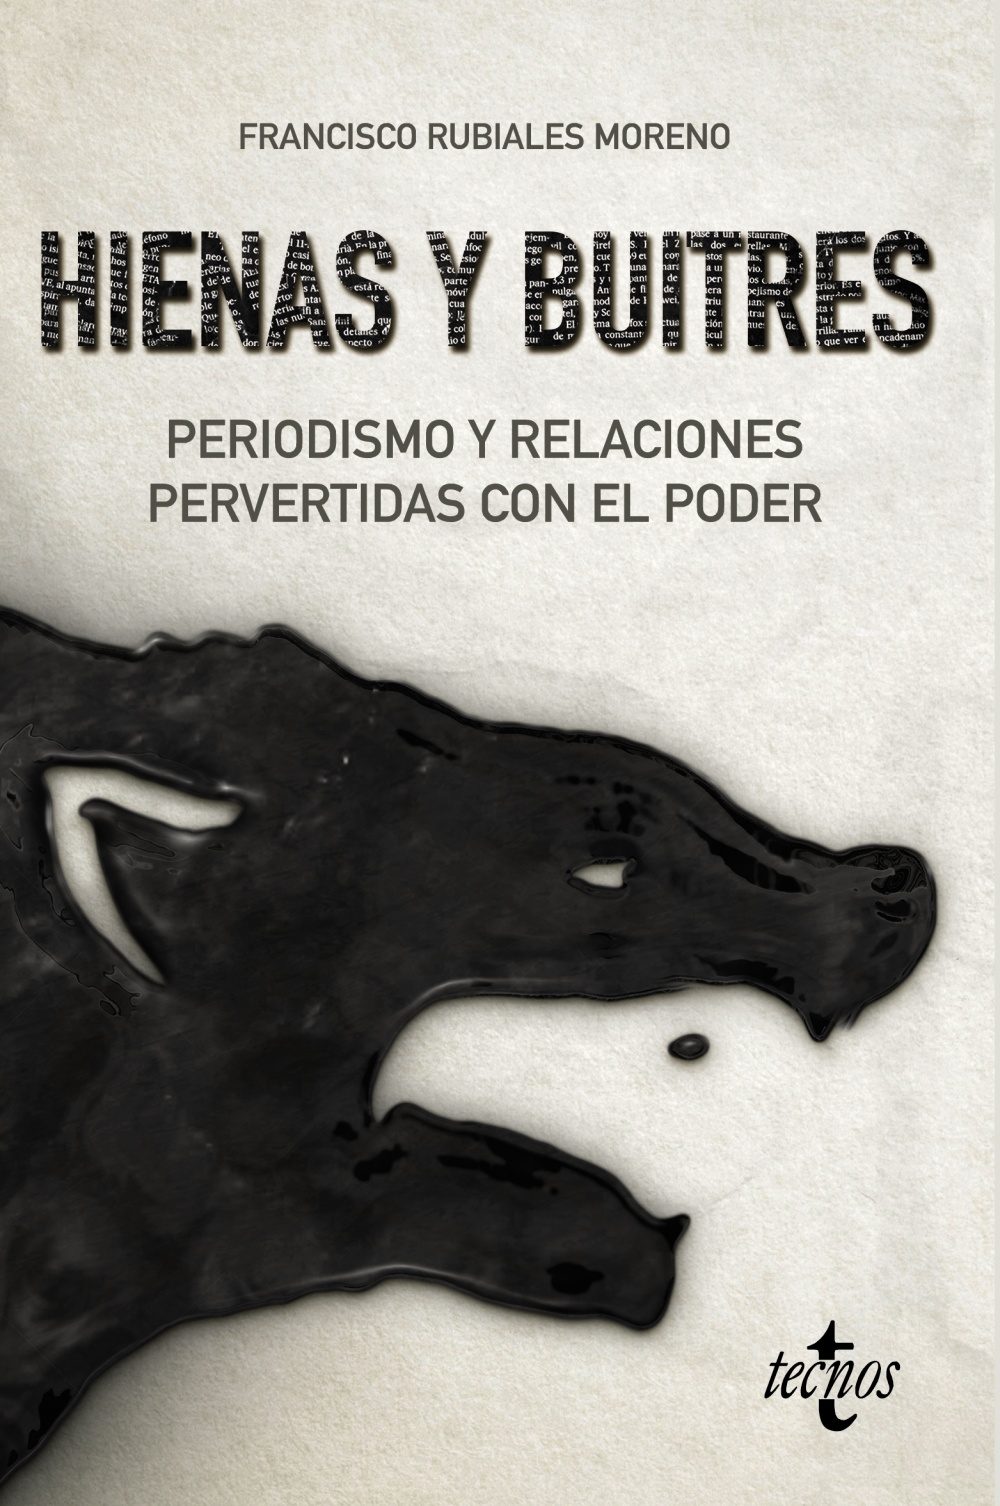 Este libro es uno de los muchos publicados en España donde se analiza el retroceso de la nación eb las últimas décadas y el hundimiento de los valores.